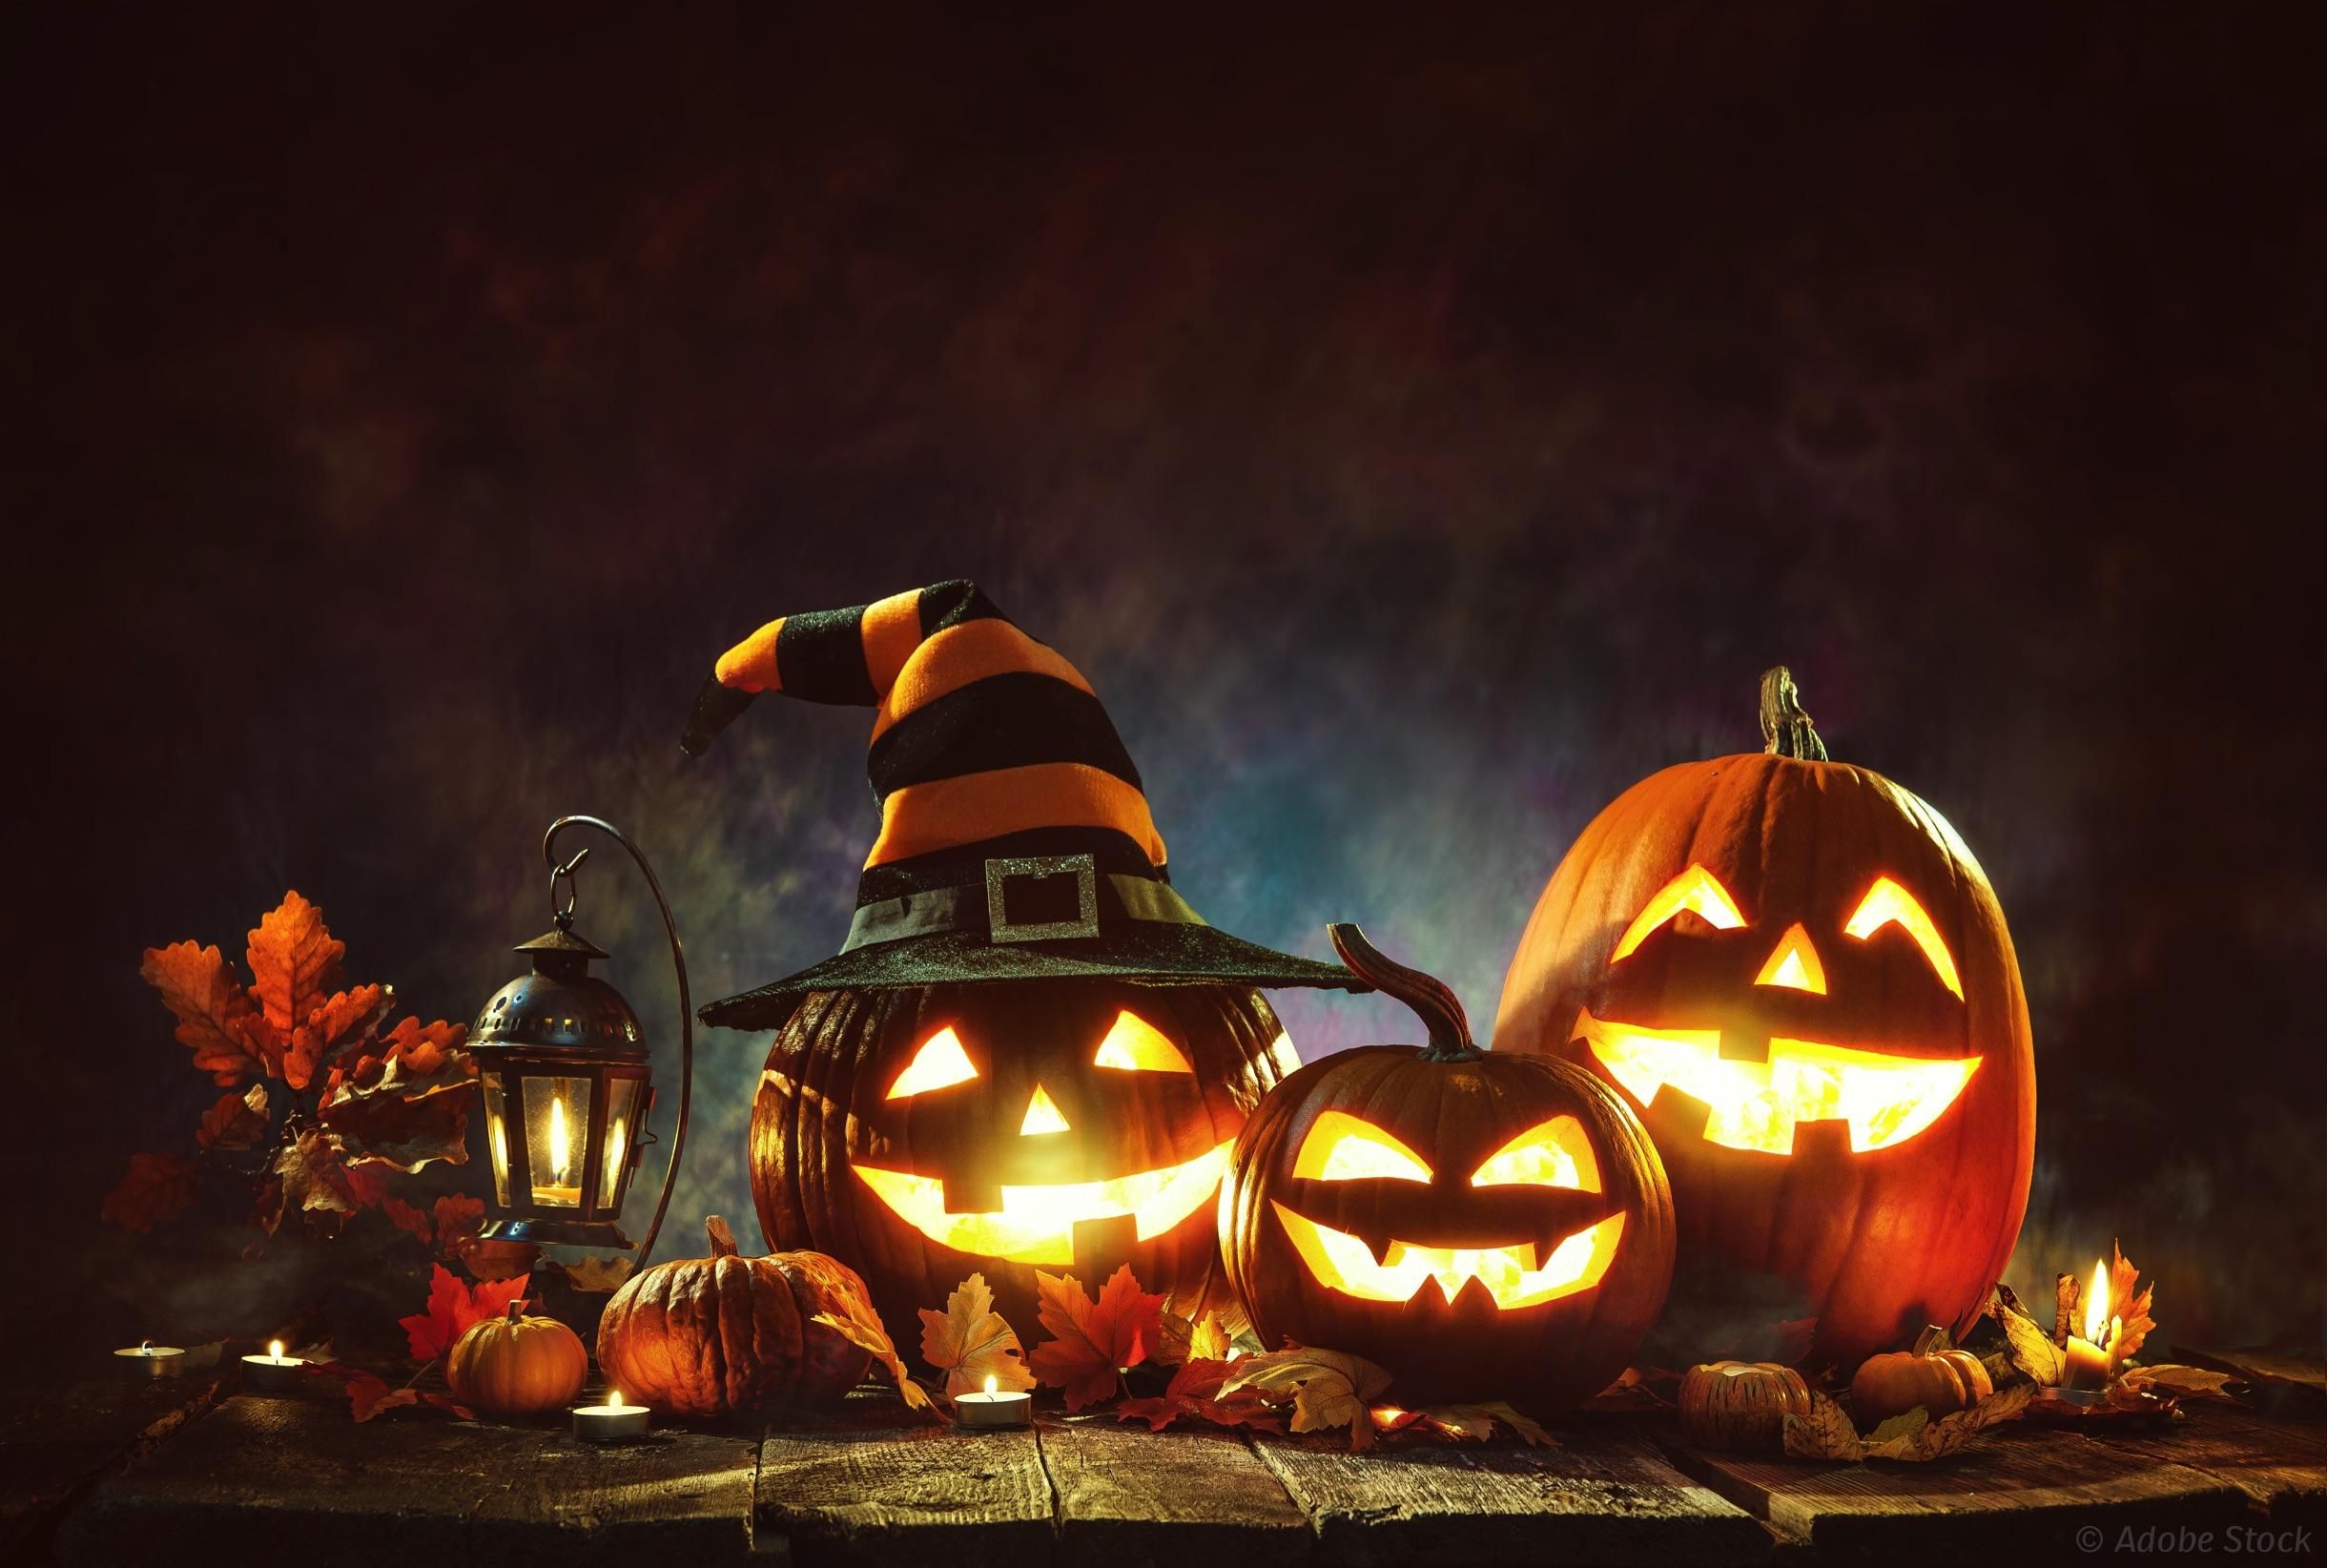 Installation pour Halloween, avec notamment des citrouilles creusées et illuminées de l’intérieur par une bougie pour former des visages.